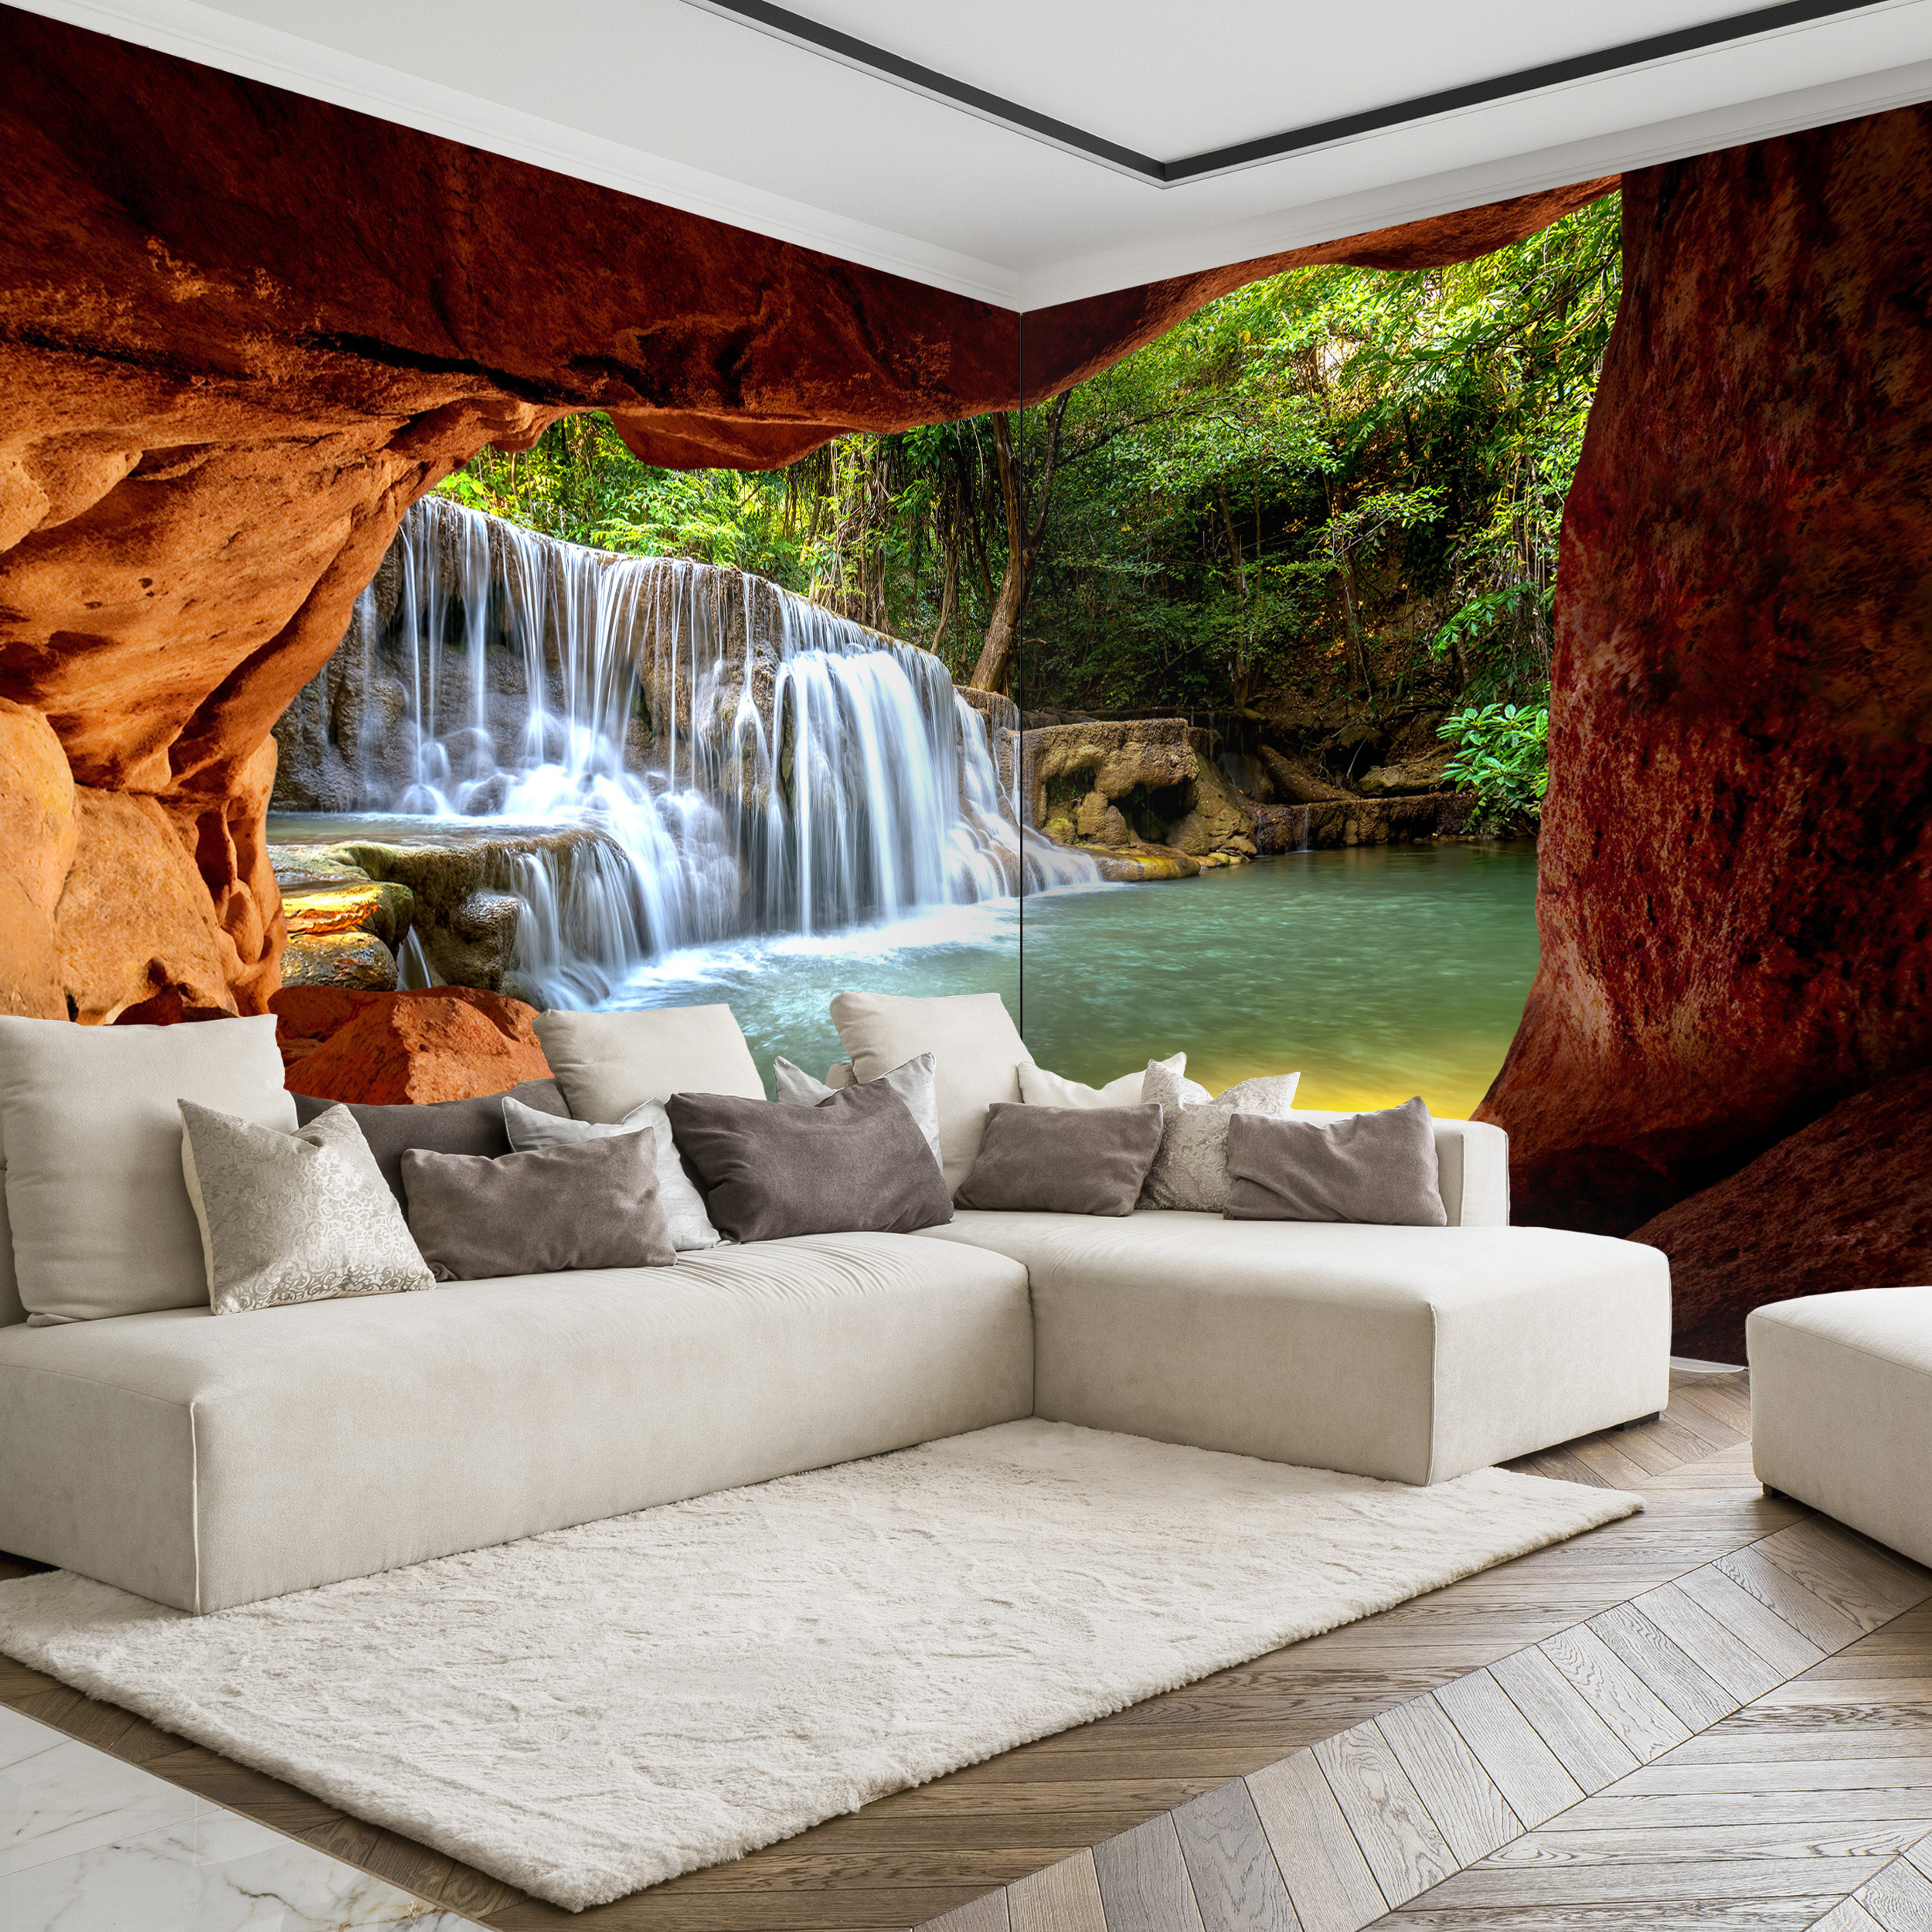 VLIESLEINWAND BILDER Wasserfall Wald Natur Kunstdruck groß WANDBILDER Wohnzimmer 